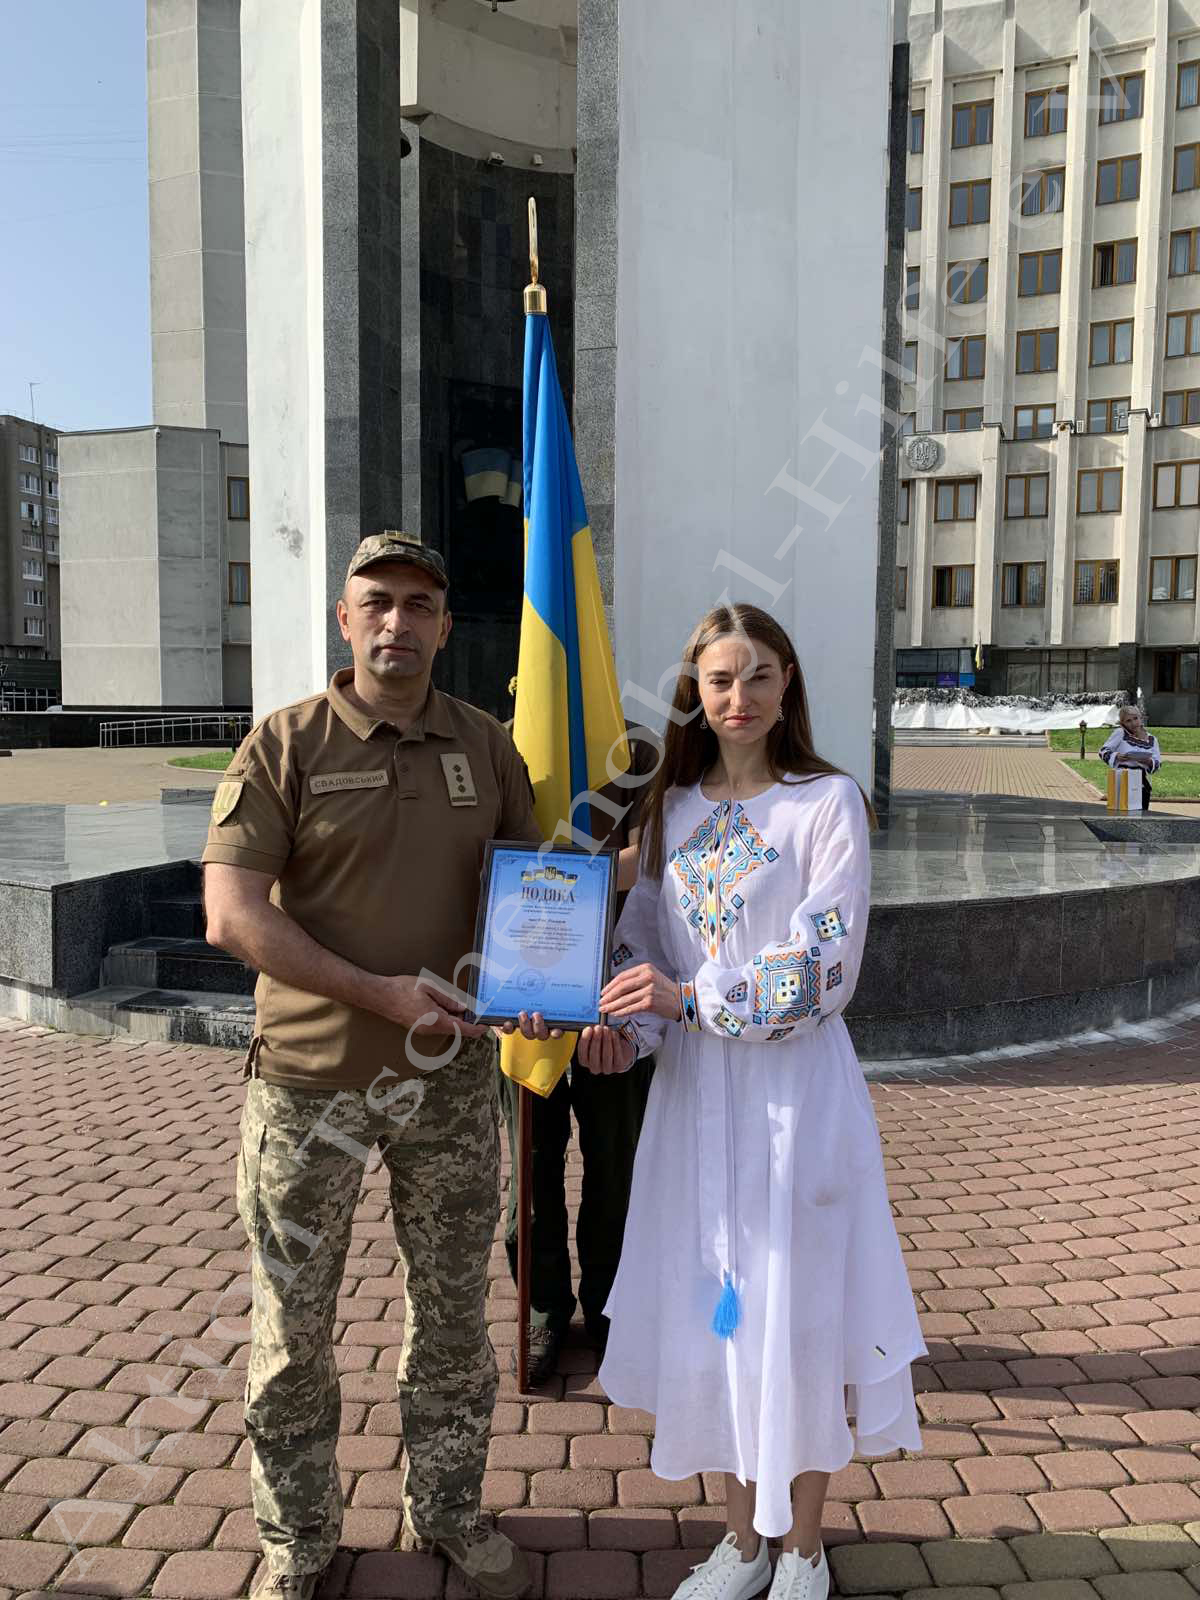 Mann und Frau vor der ukranischen Flagge